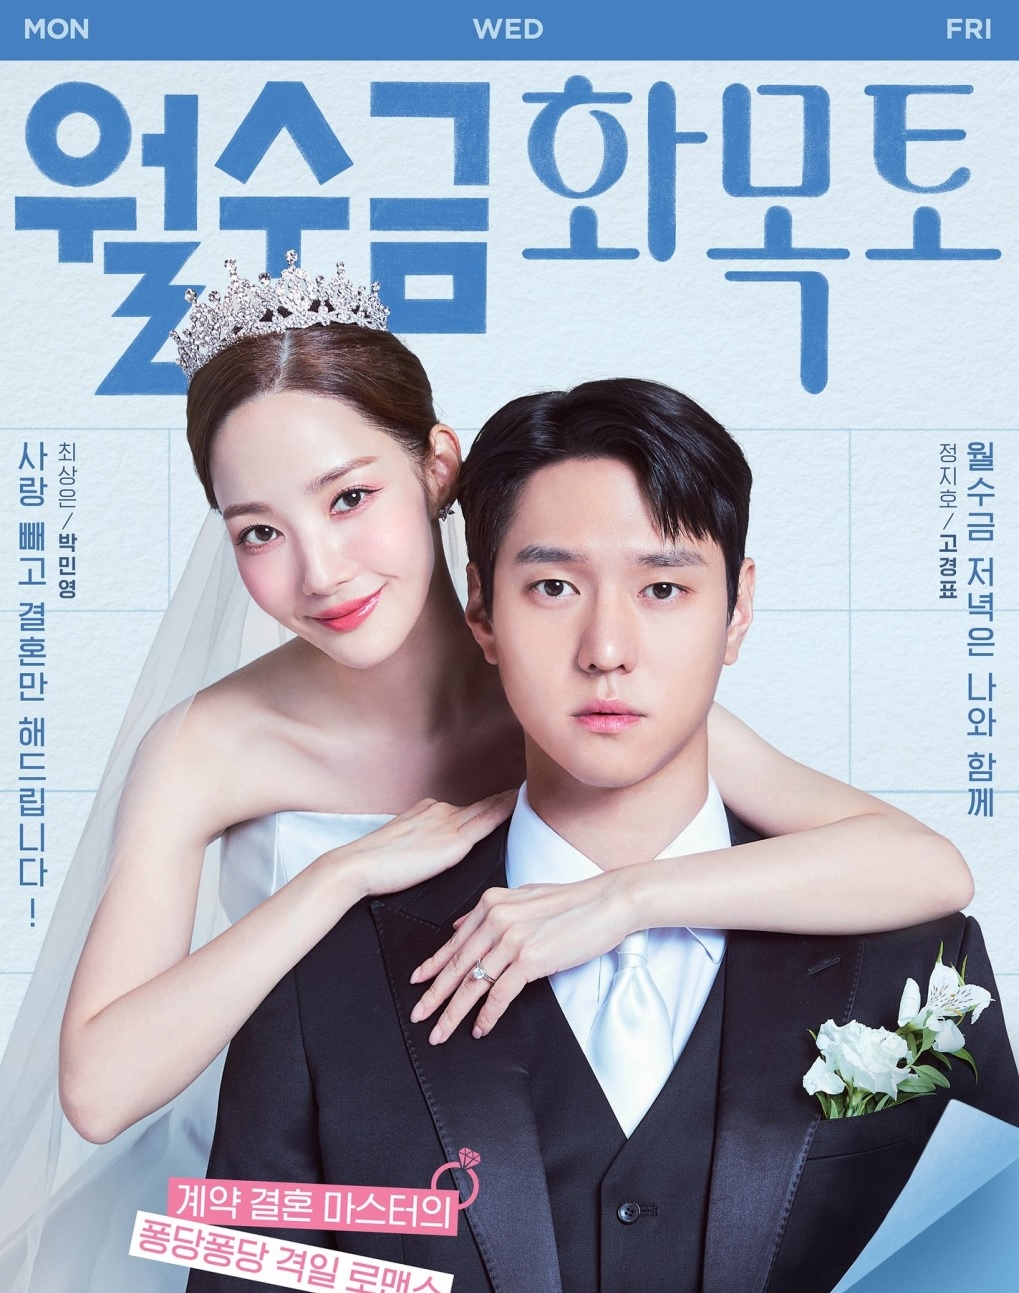 "Chồng hờ" của Park Min Young: 3 lần được xướng tên vì chuyện tình ái, chia sẻ cảm động về nỗi đau mất mẹ - Ảnh 1.